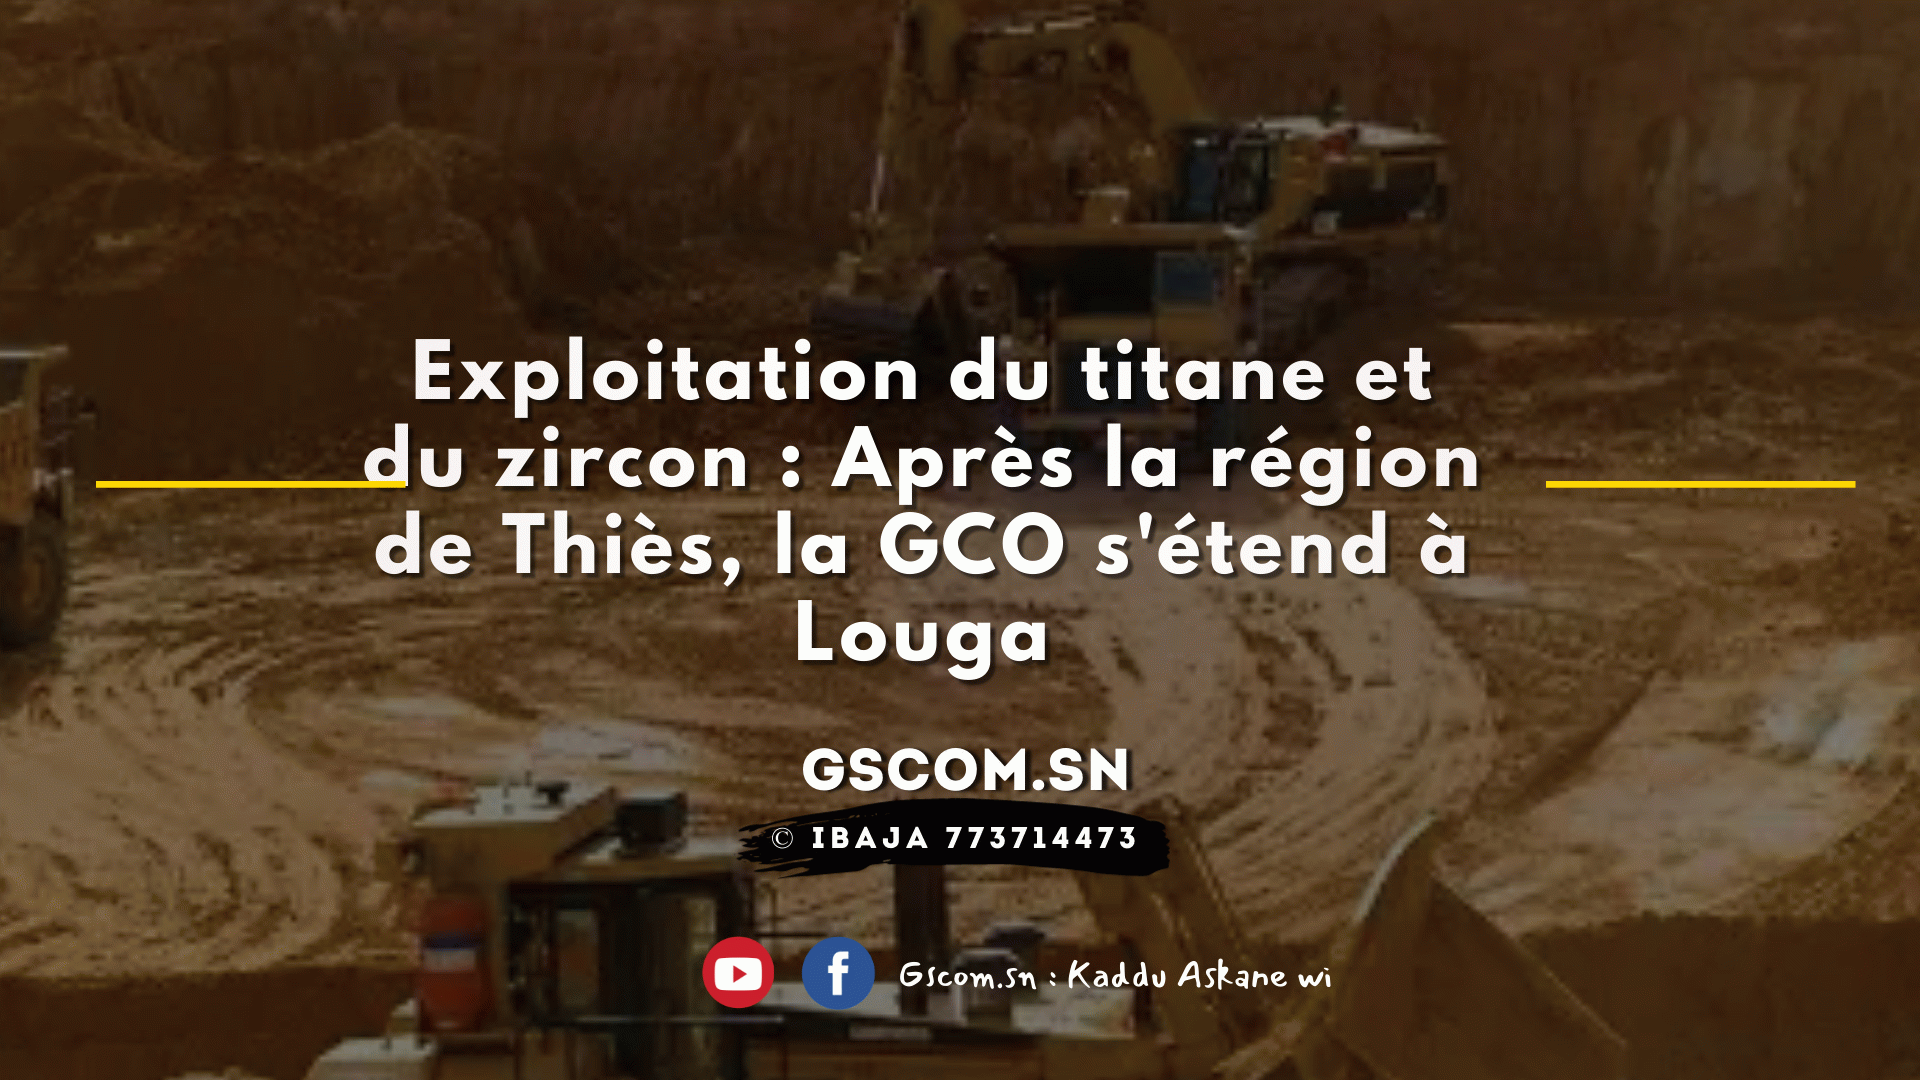 Exploitation du titane et du zircon : Après la région de Thiès, la GCO s'étend à Louga.